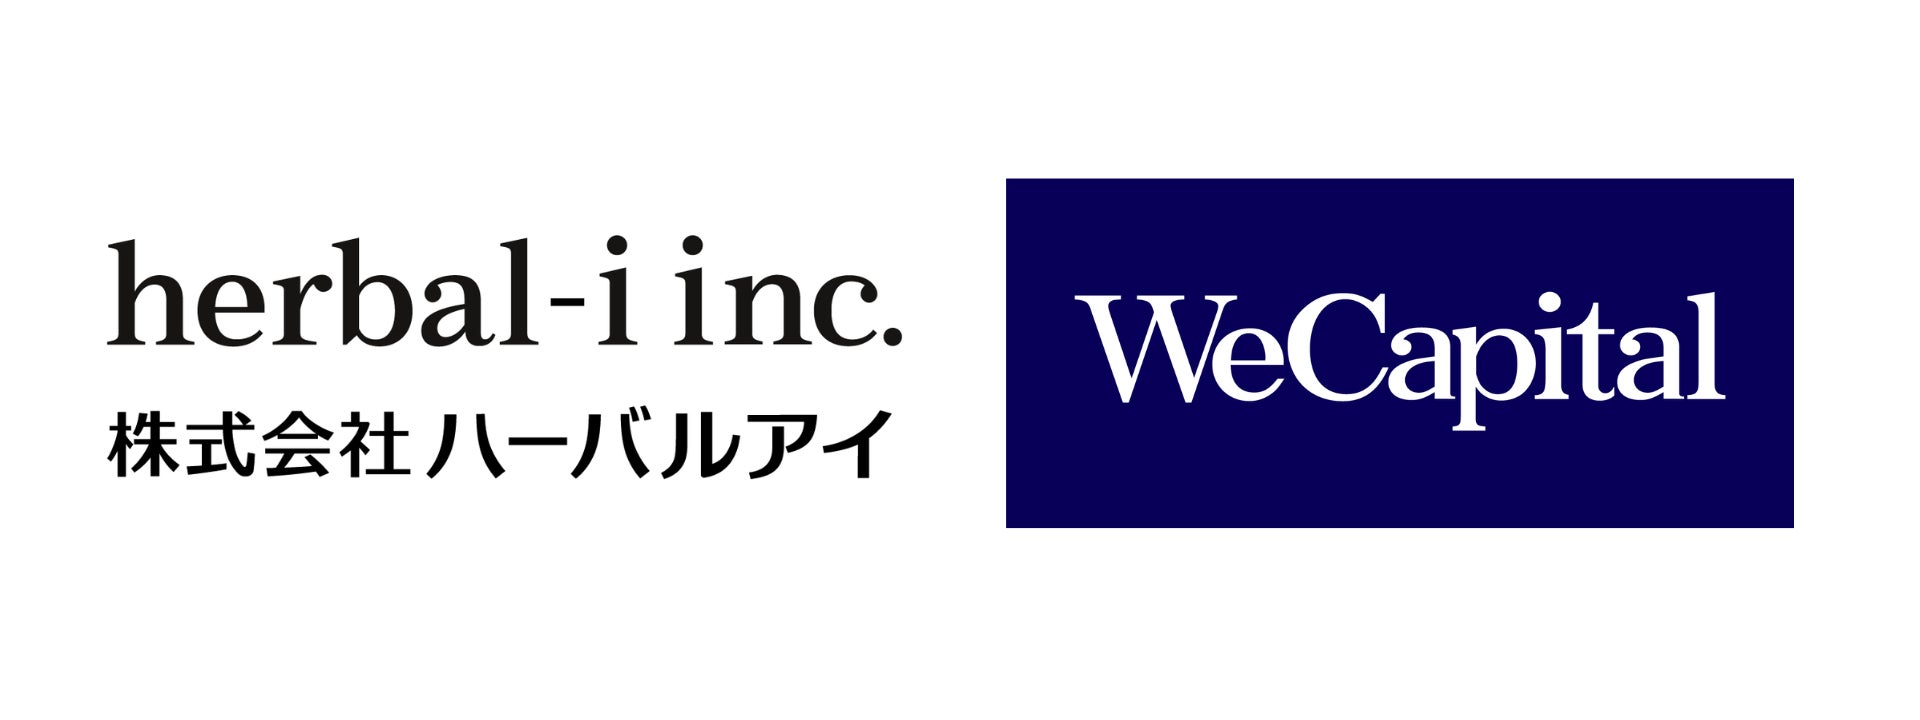 株式会社ハーバルアイがWeCapital株式会社との業務提携を発表